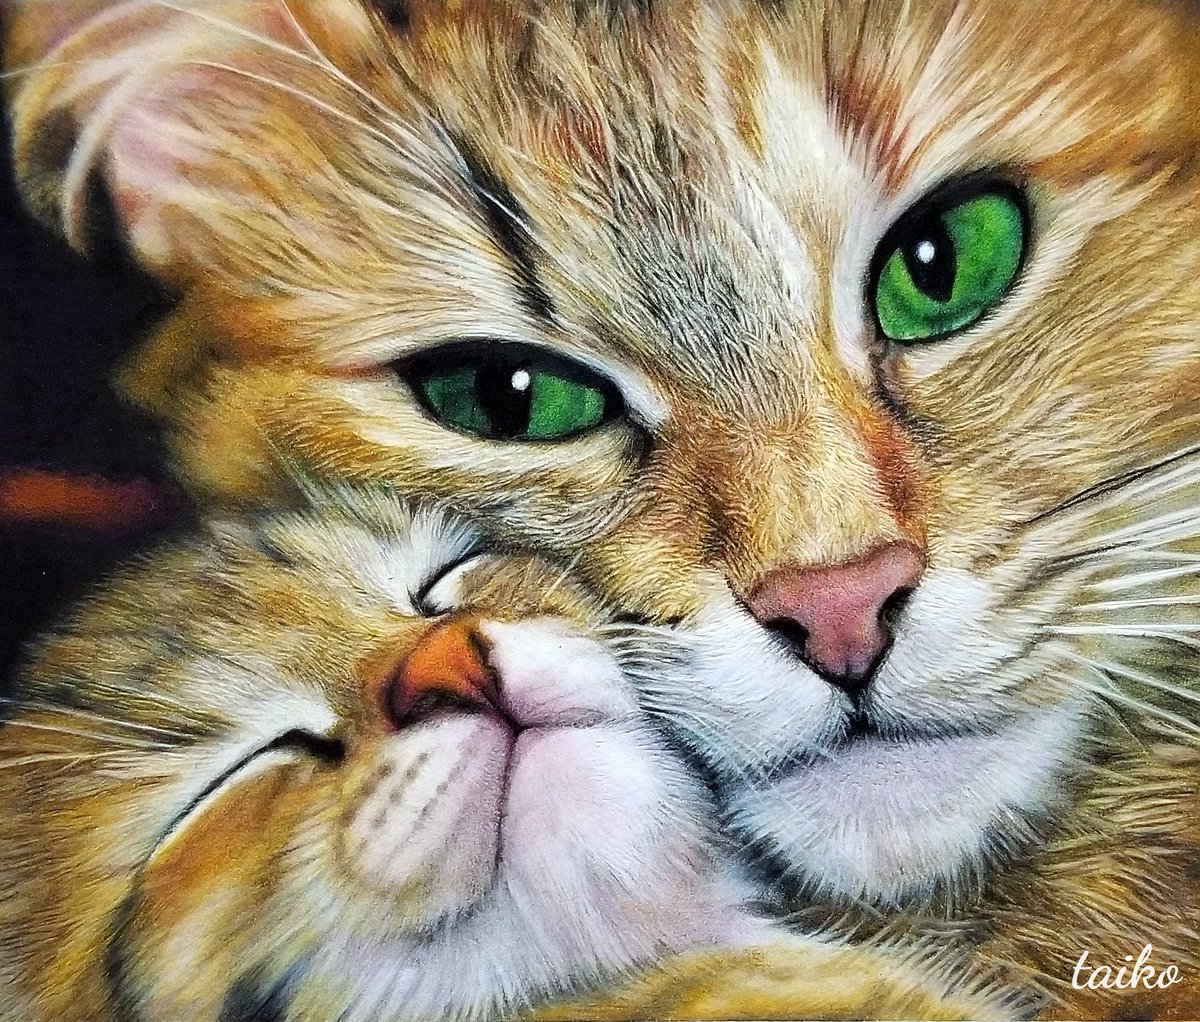 #見た人もなにか無言で猫を貼る
#色鉛筆画